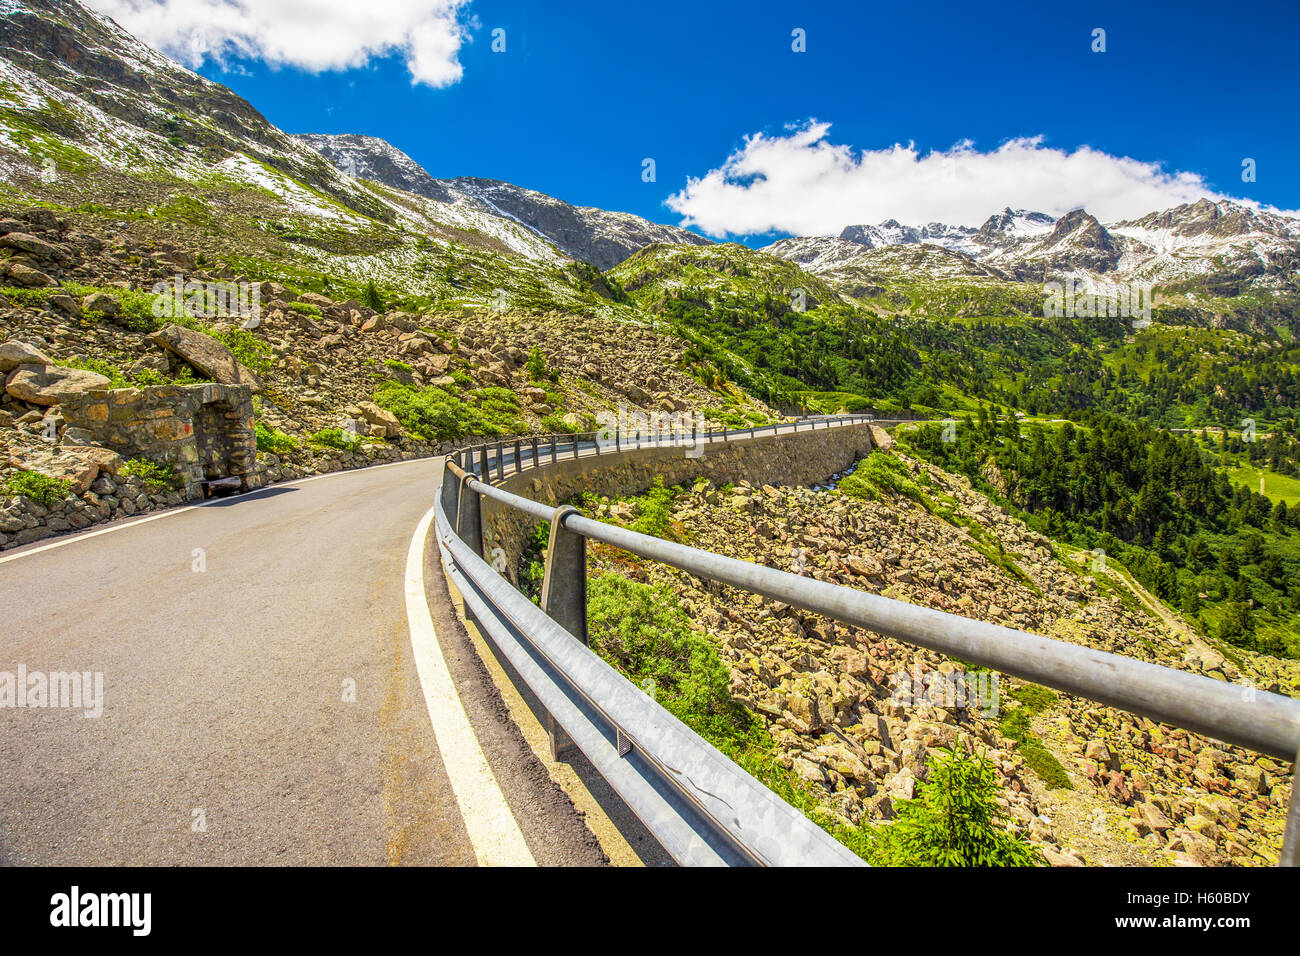 Route de montagne à col d'Albula - col de montagne suisse dans le canton des Grisons. La Suisse. Banque D'Images